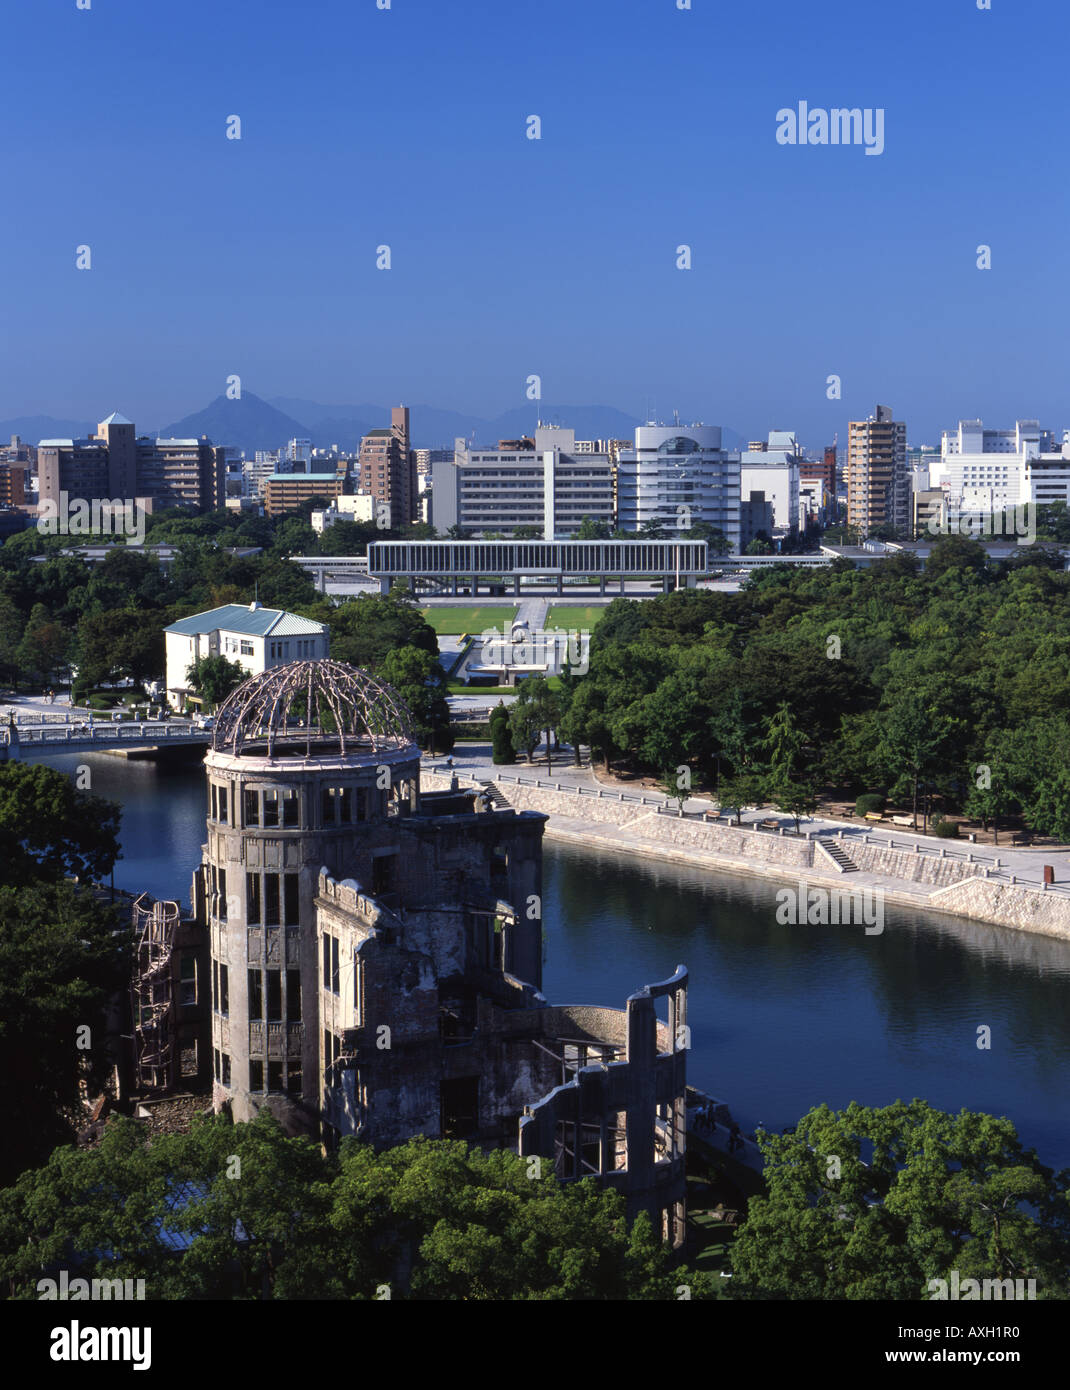 A-Bomb Dome ( Genbaku Dome ), Hiroshima, Giappone. Un sito Patrimonio Mondiale dell'UNESCO. Parco del Memoriale della Pace e al Museo Memoriale della Pace. Foto Stock